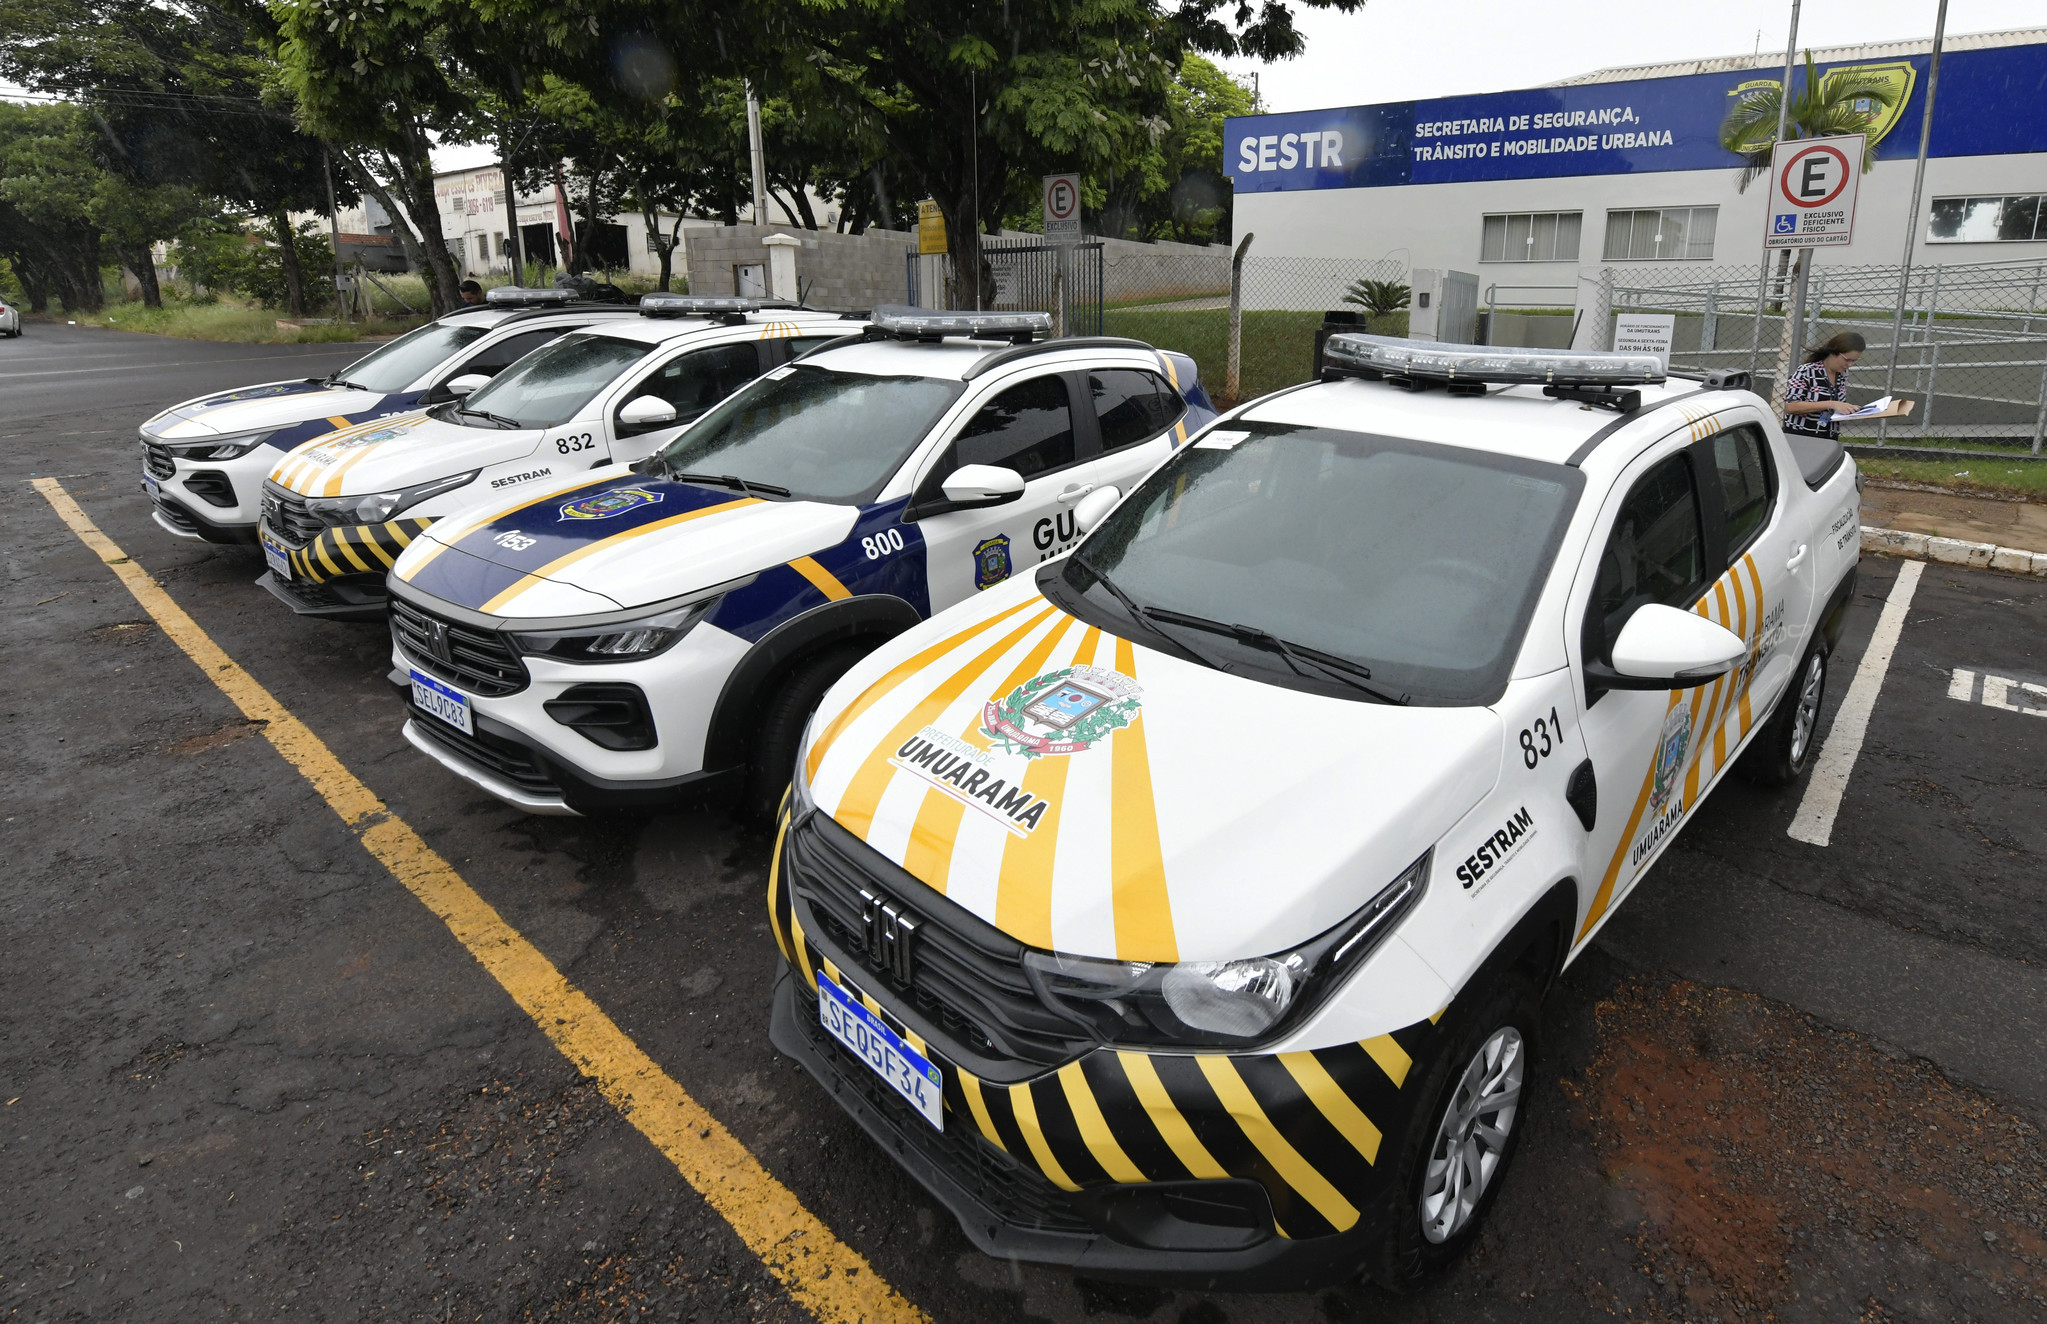 Jornal Ilustrado - Sestram equipa Guarda Municipal e fiscalização de trânsito com quatro viaturas novas